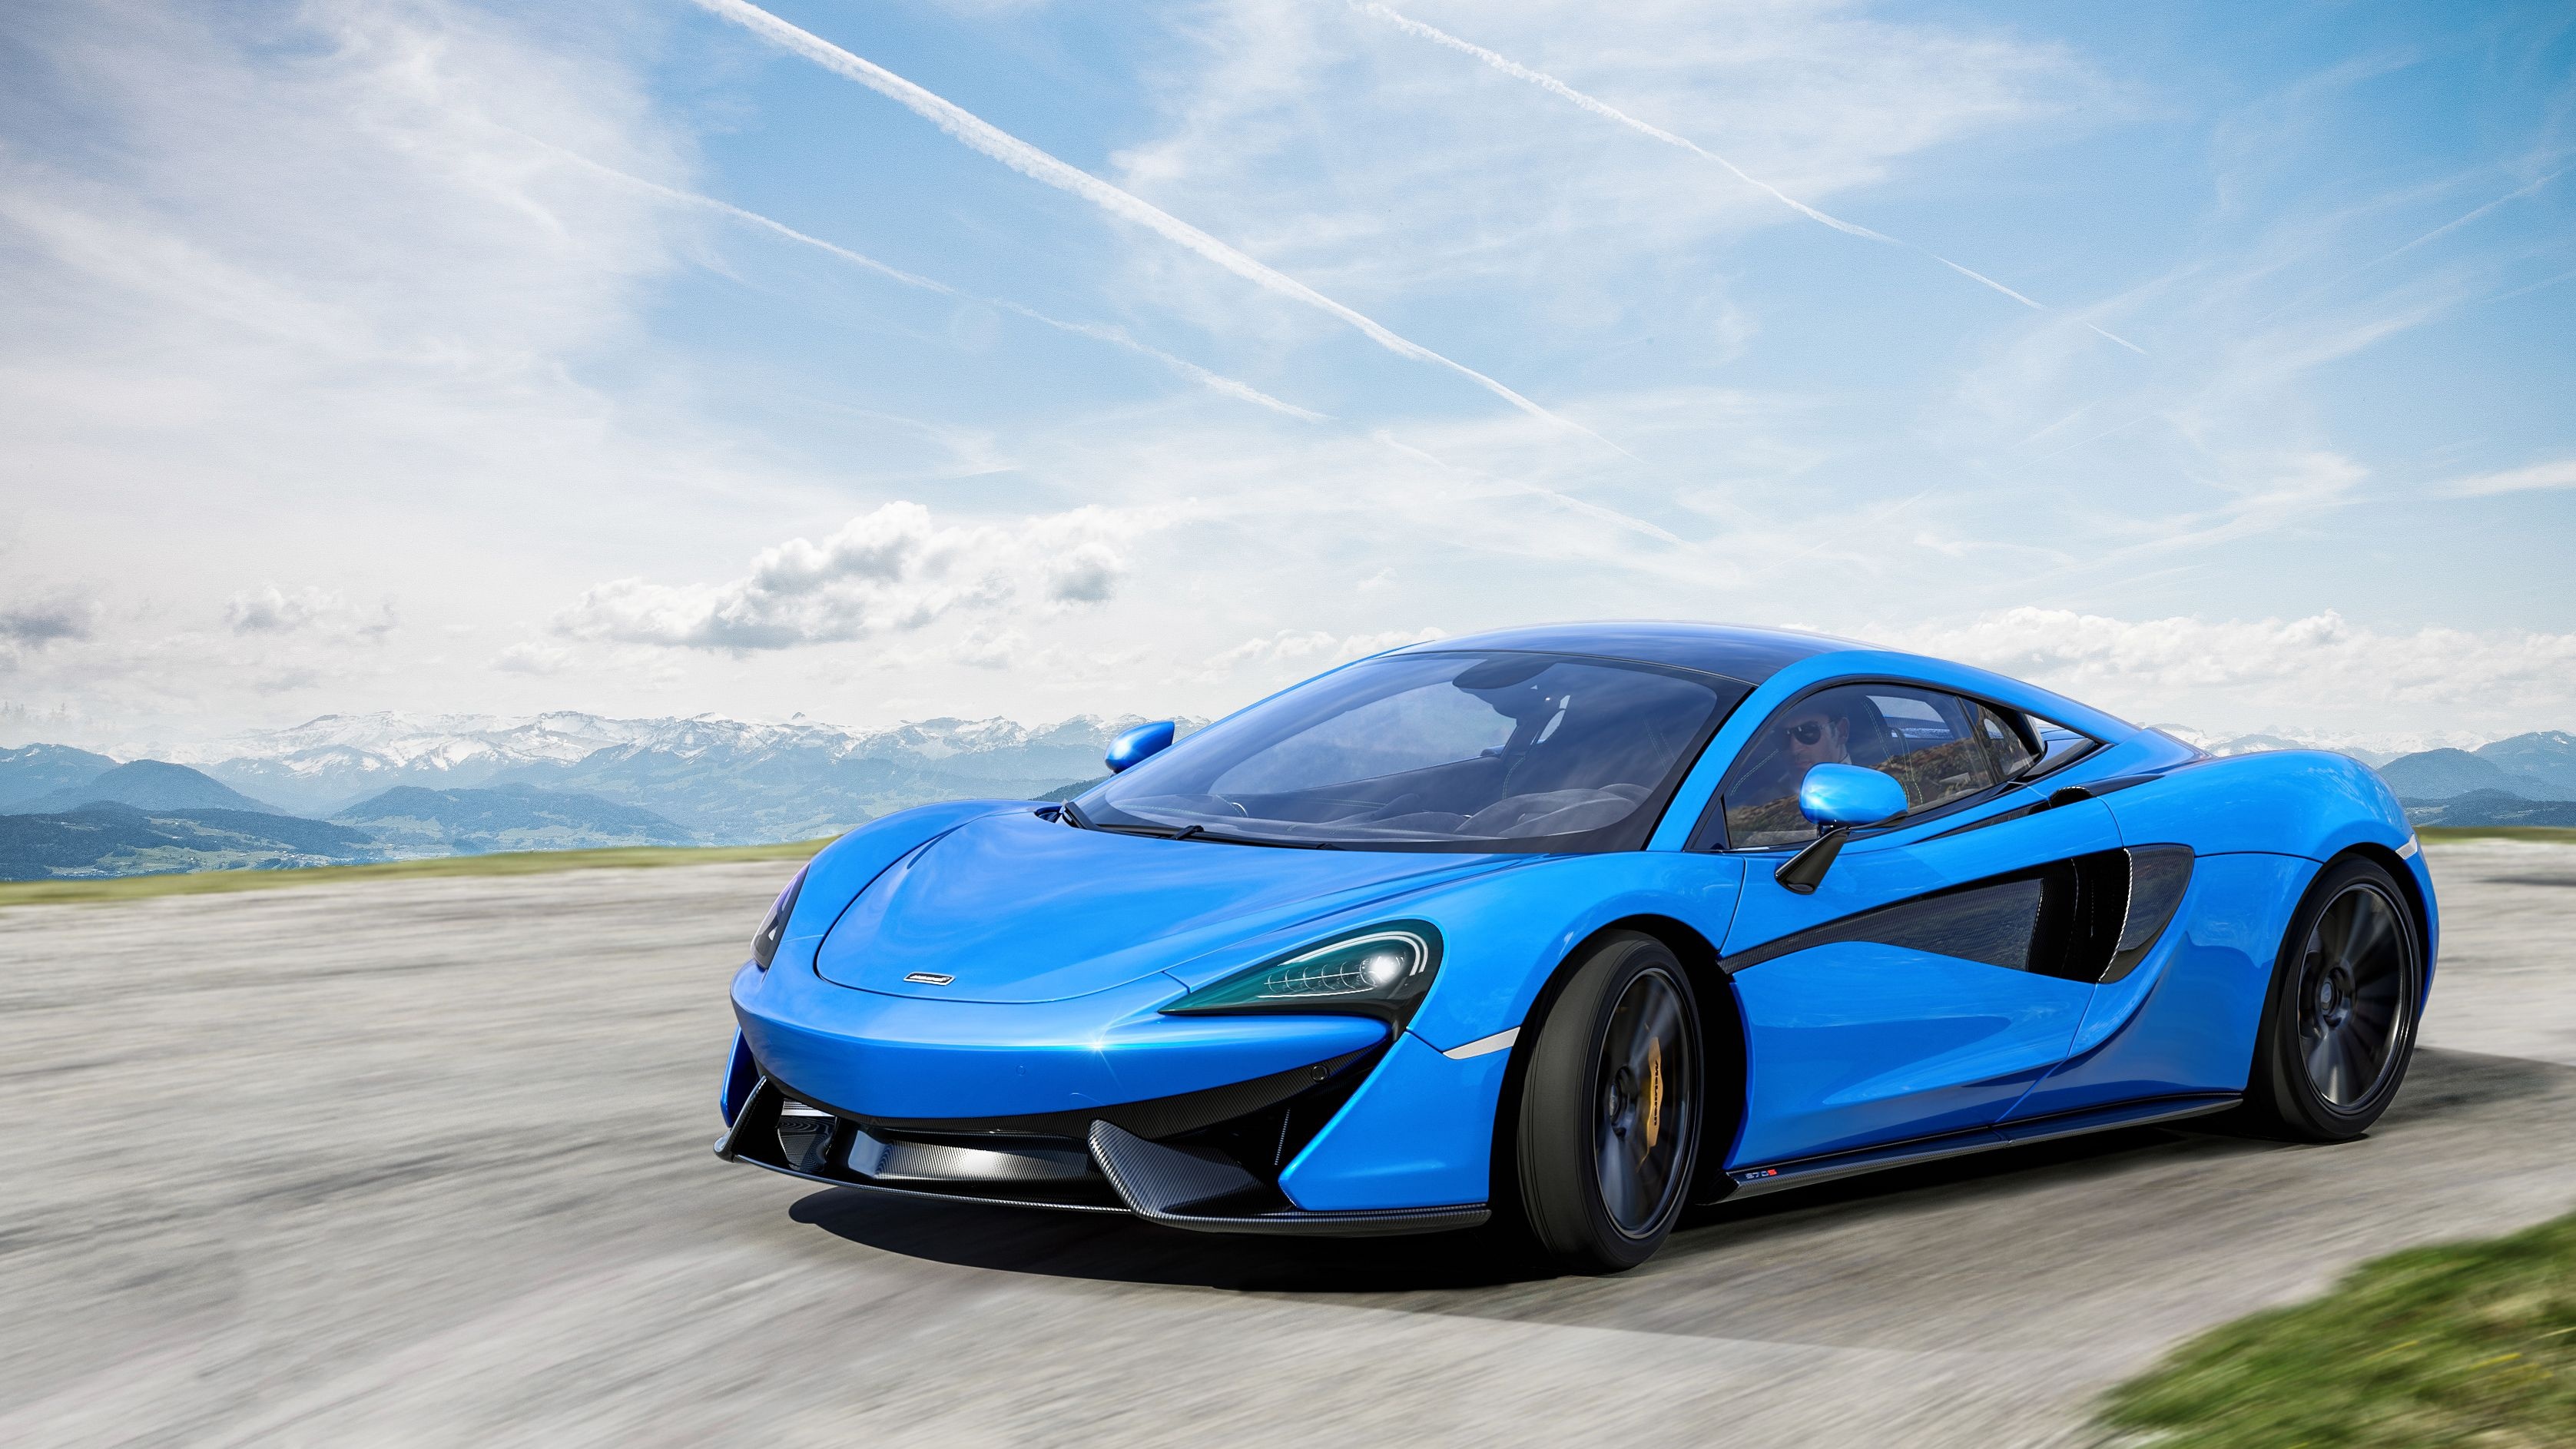 McLaren 570S, Blue wallpapers, McLaren backgrounds, 3360x1890 HD Desktop